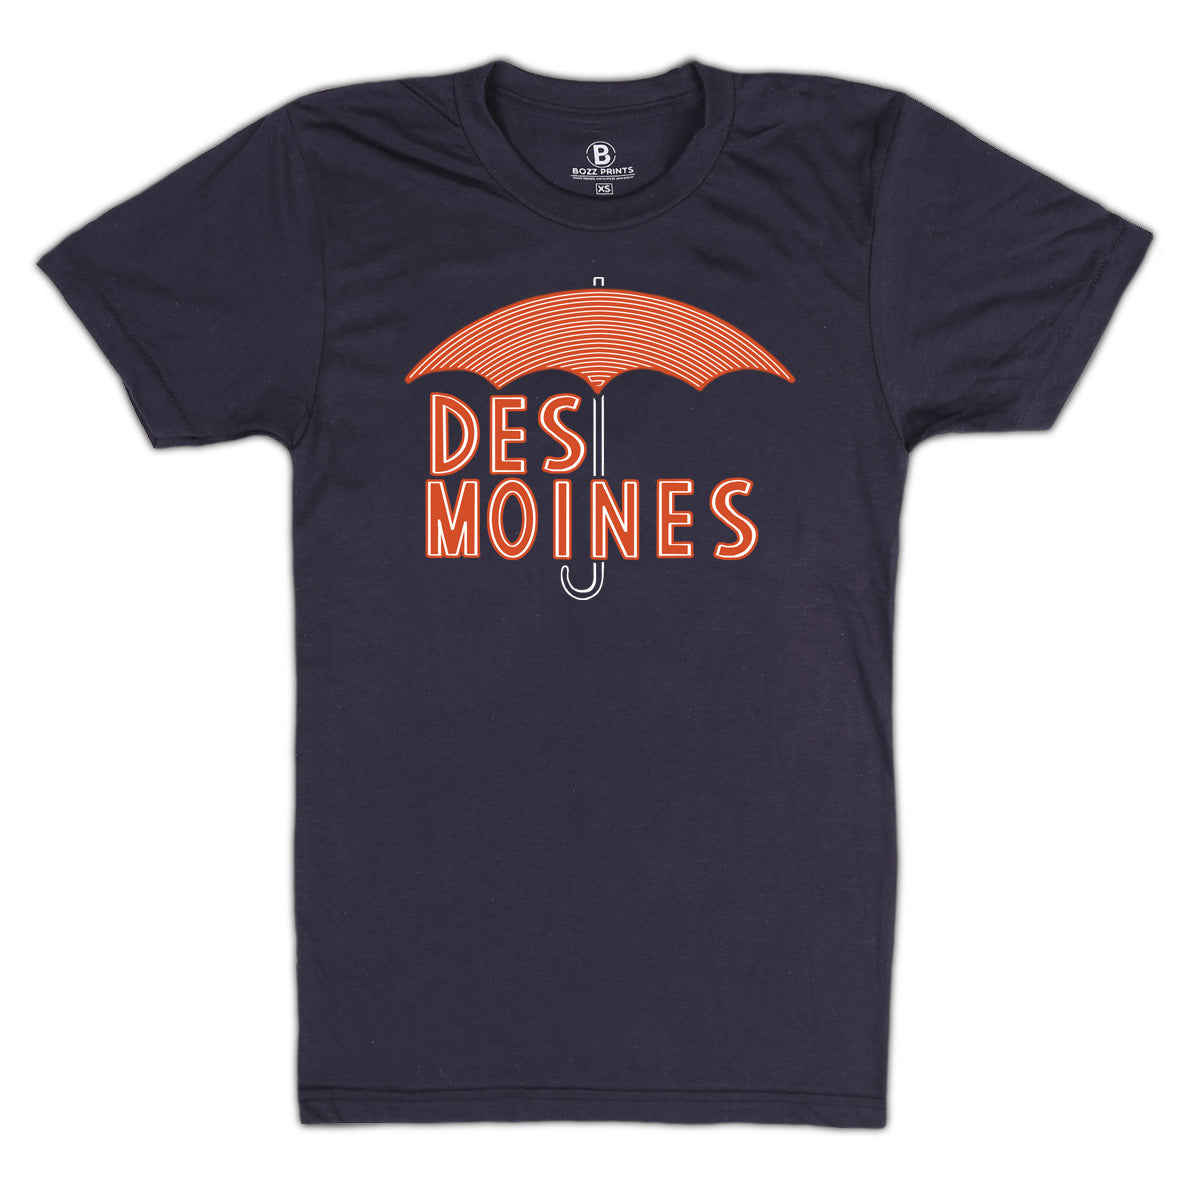 Des Moines Umbrella T-Shirt - Bozz Prints